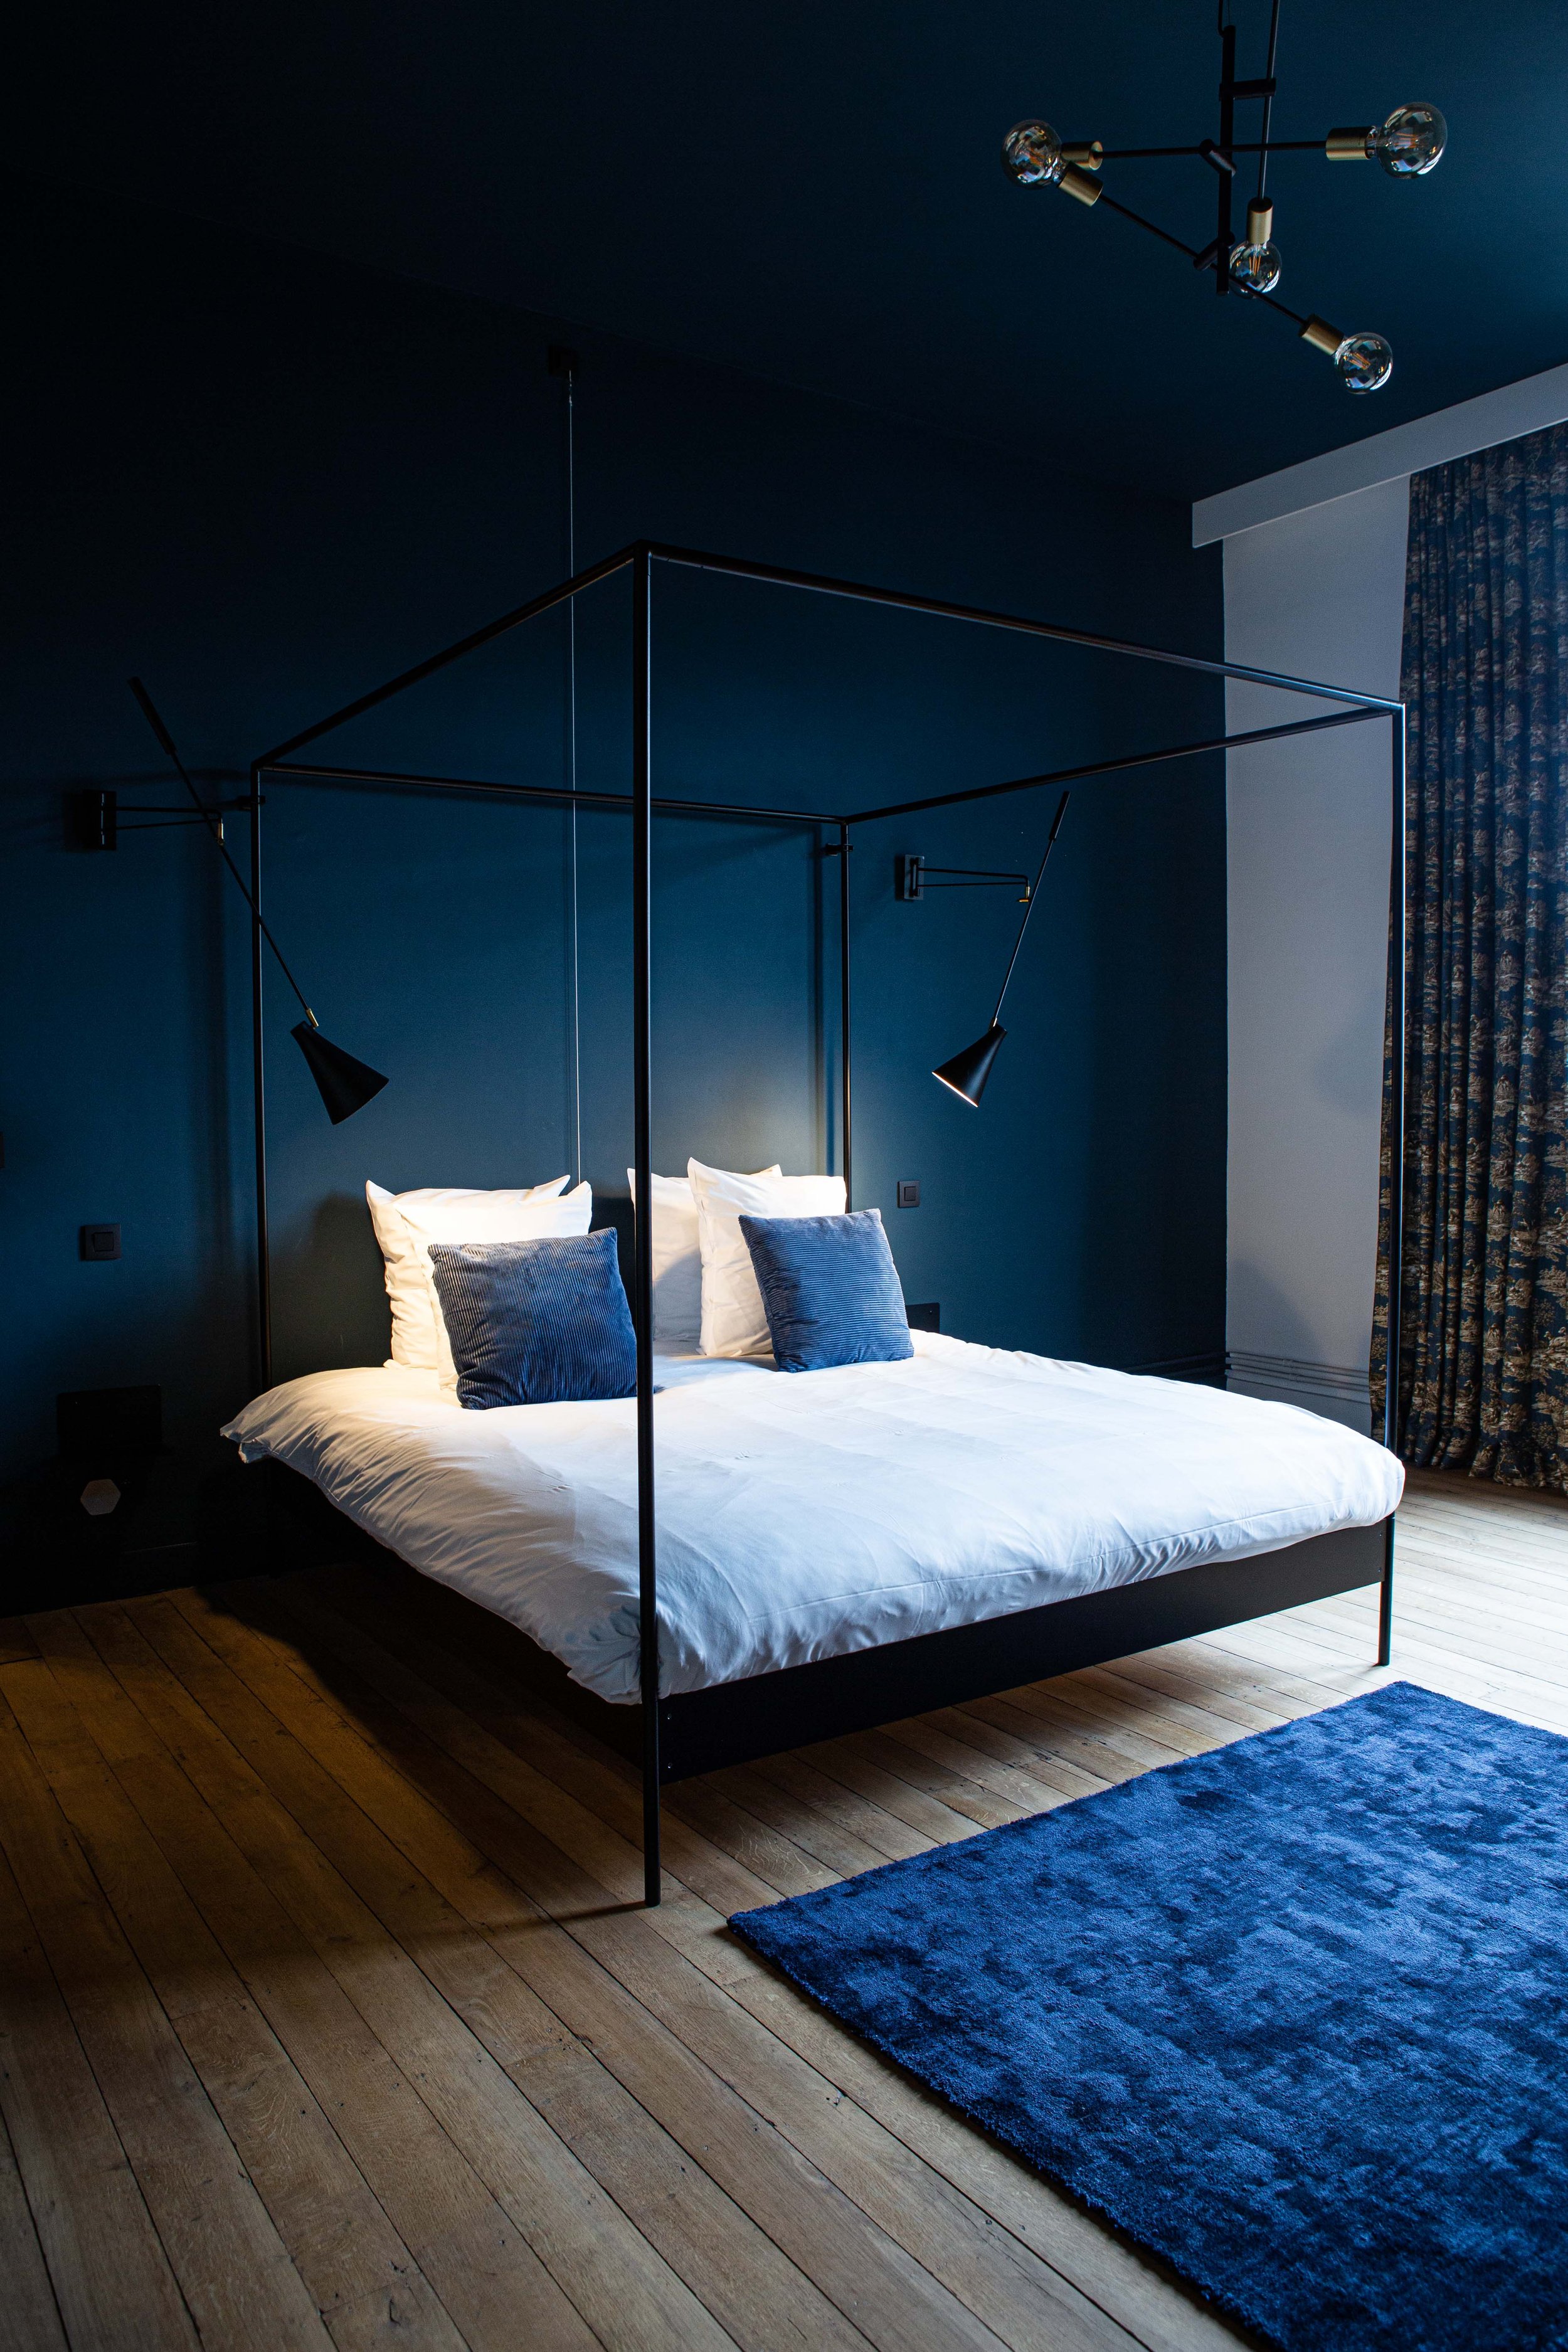  Une chambre au coloris bleu nuit dans laquelle on retrouve au lit à baldaquin moderne et des lampes design.  